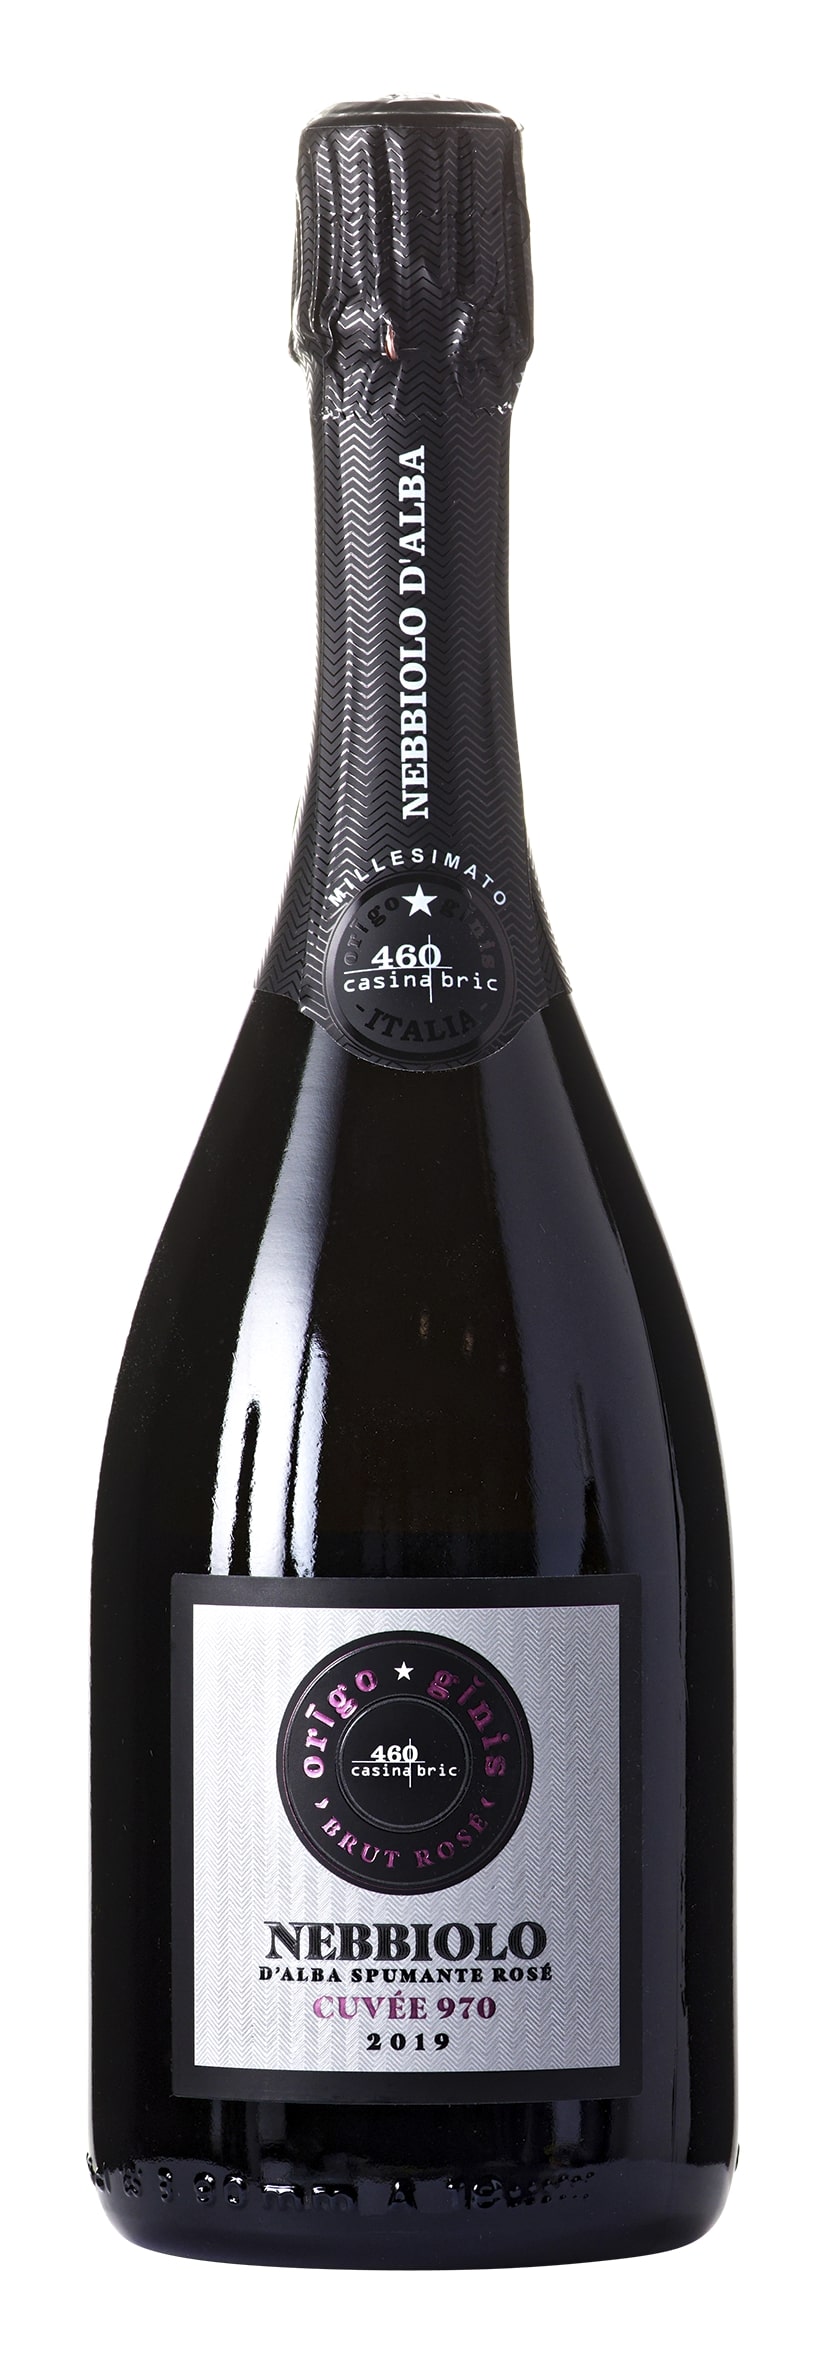 Spumante Nebbiolo d'Alba Brut Rosé Cuvée 970 2019